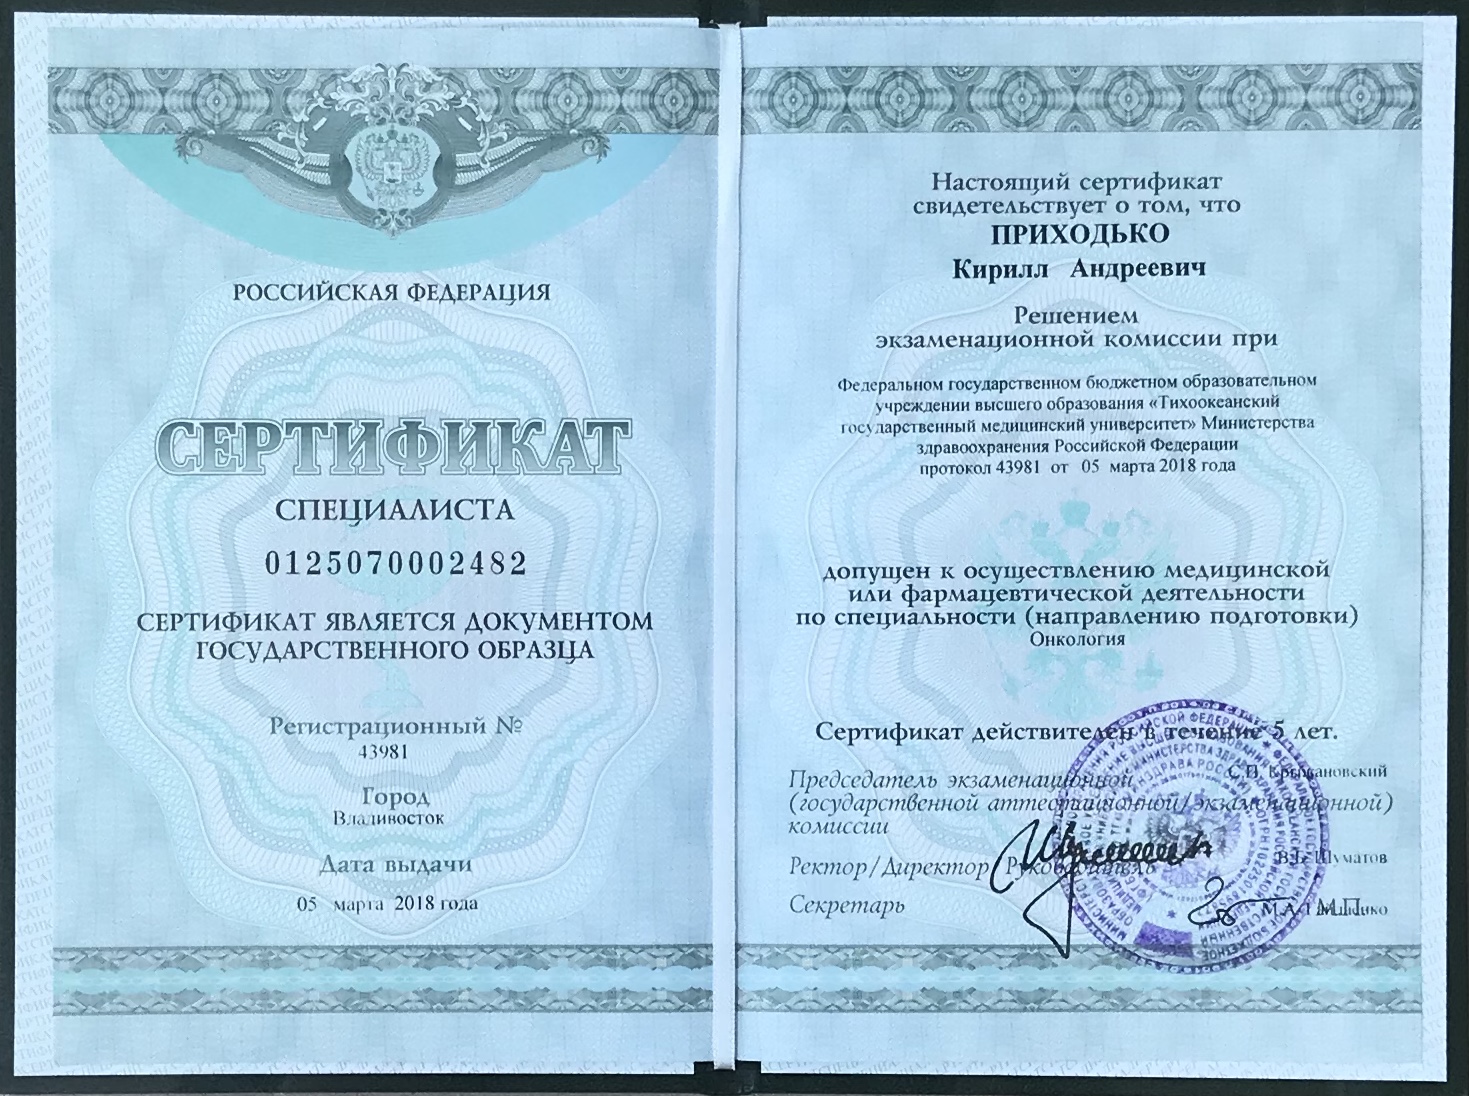 Сертификат доктора Приходько 